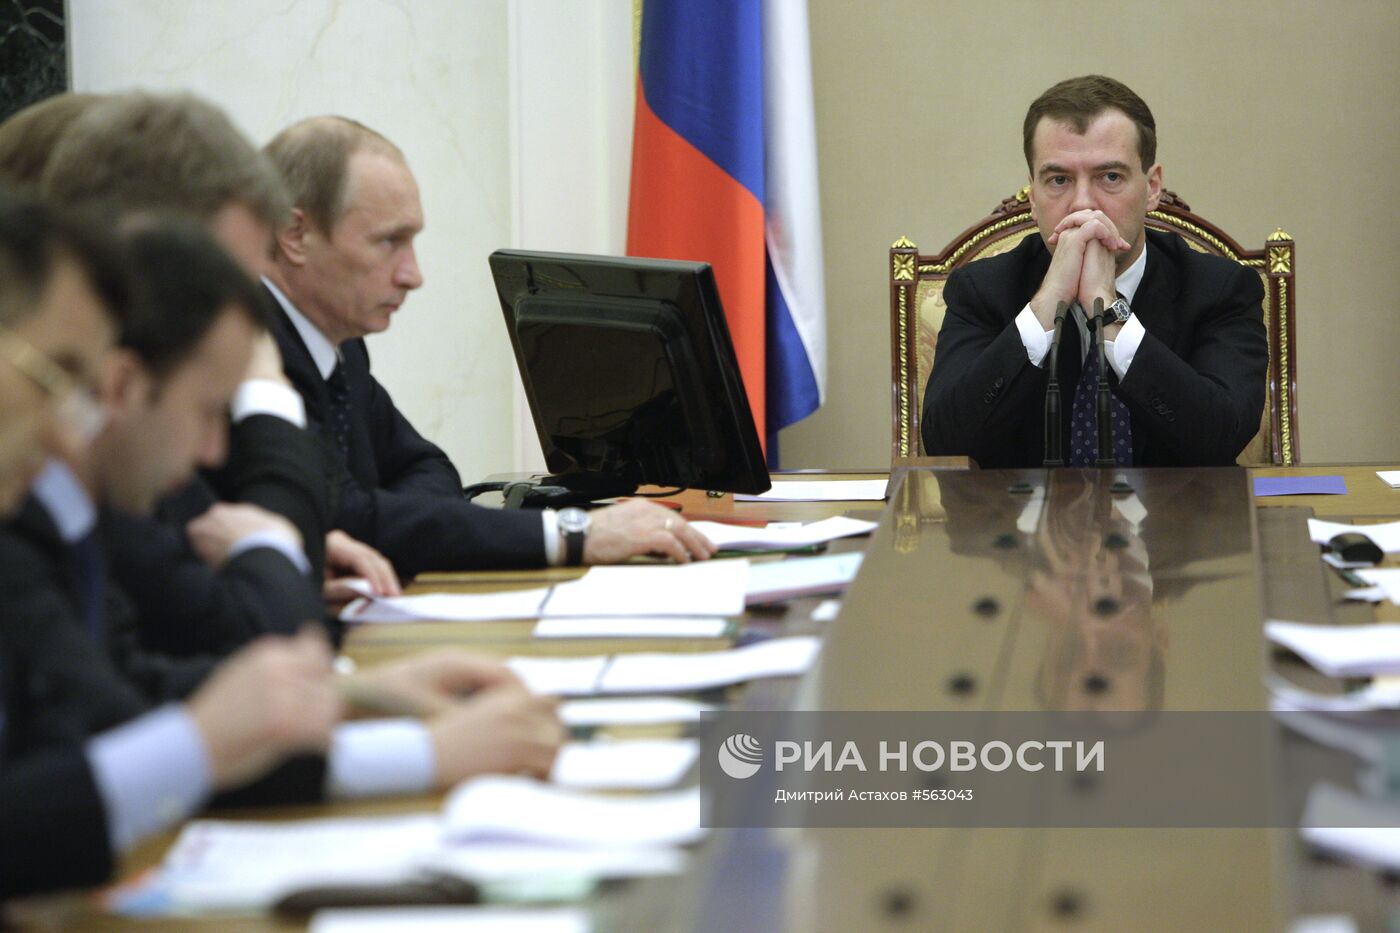 Д.Медведев провел совещание в Кремле